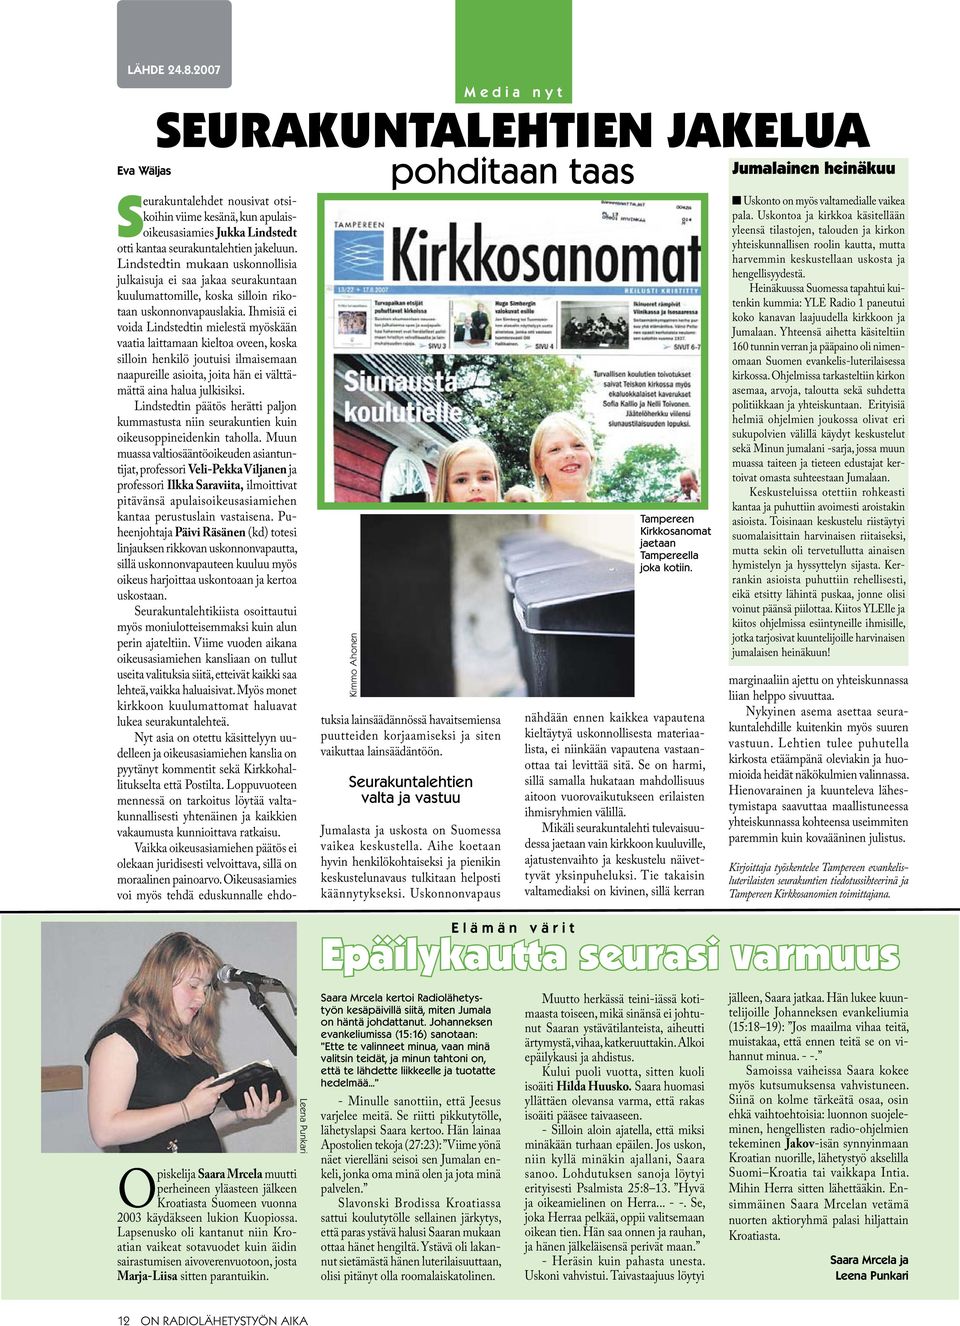 Kimmo Ahonen pohditaan taas Seurakuntalehdet nousivat otsikoihin viime kesänä, kun apulaisoikeusasiamies Jukka Lindstedt otti kantaa seurakuntalehtien jakeluun.